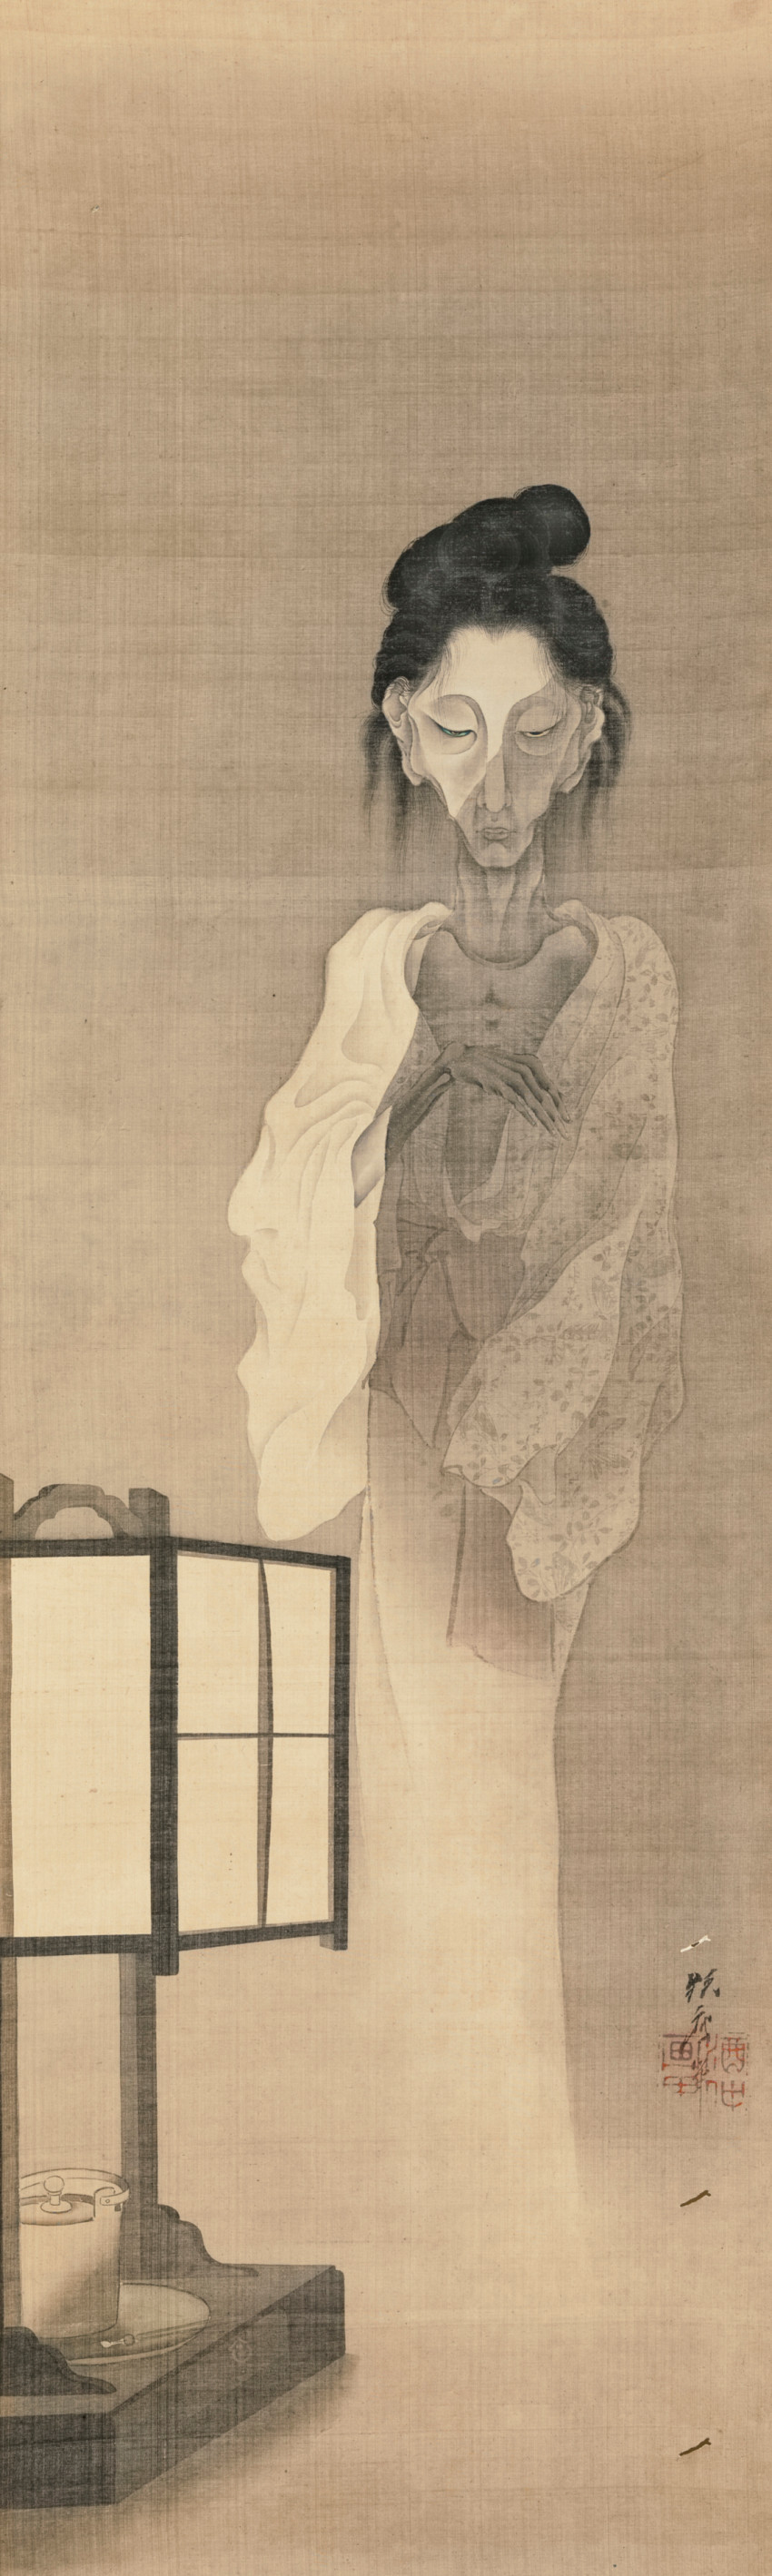 Kawanabe  Kyōsai, Ghost